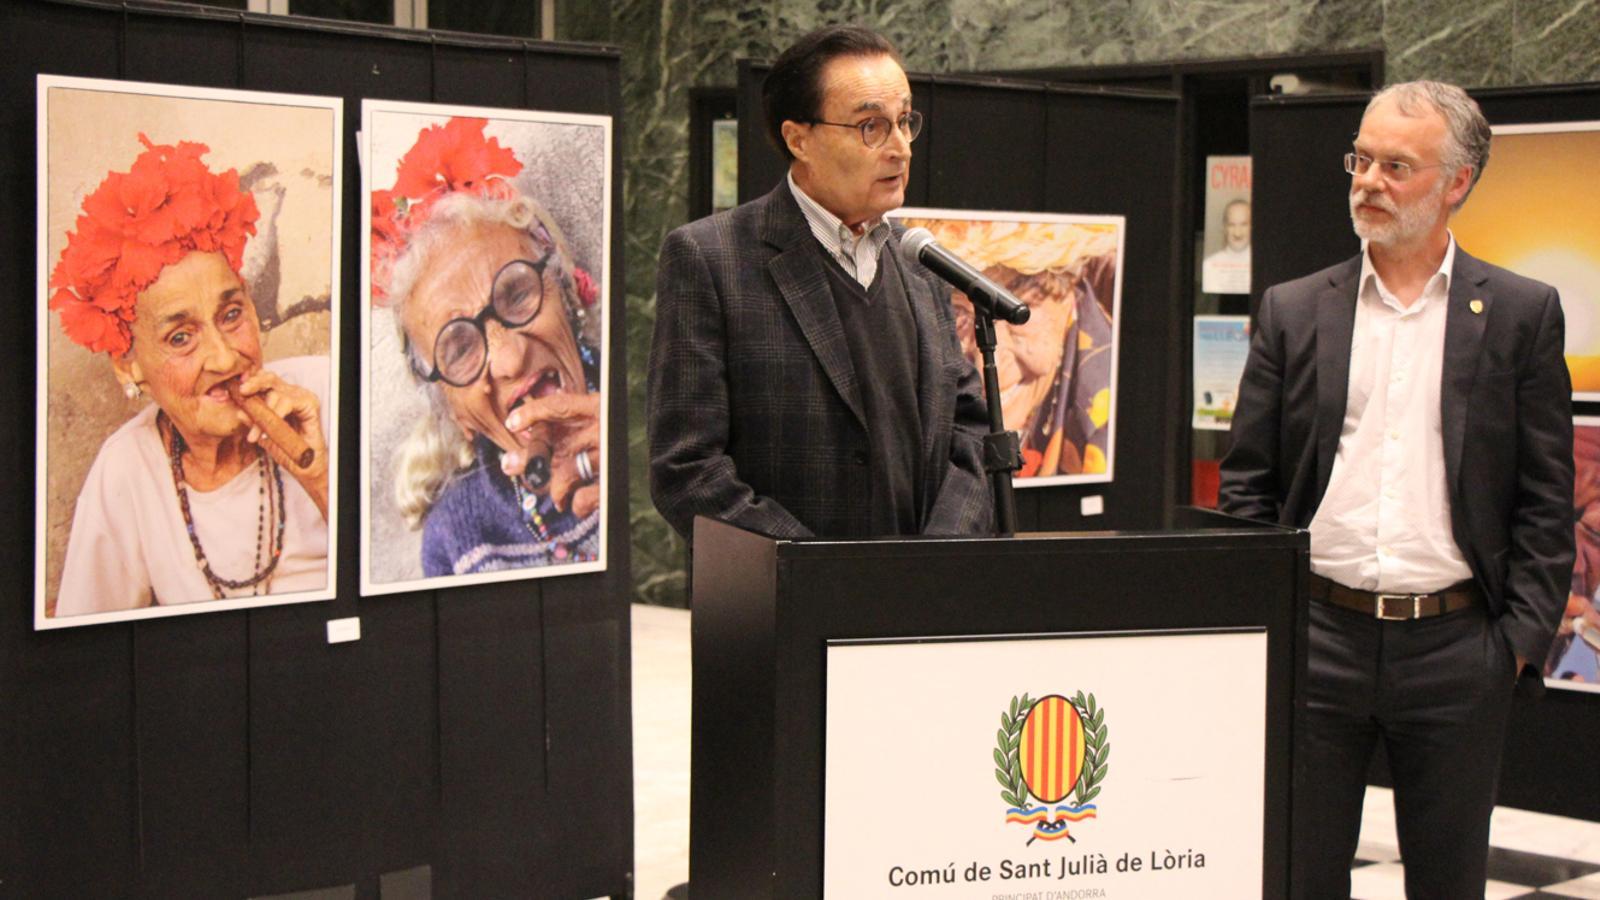 El president de la Federació Andorrana de Fotografia, Joan Burgués, i el conseller de Cultura del comú de Sant Julià de Lòria, Josep Roig, durant la inauguració de la mostra. / E. J. M. (ANA)